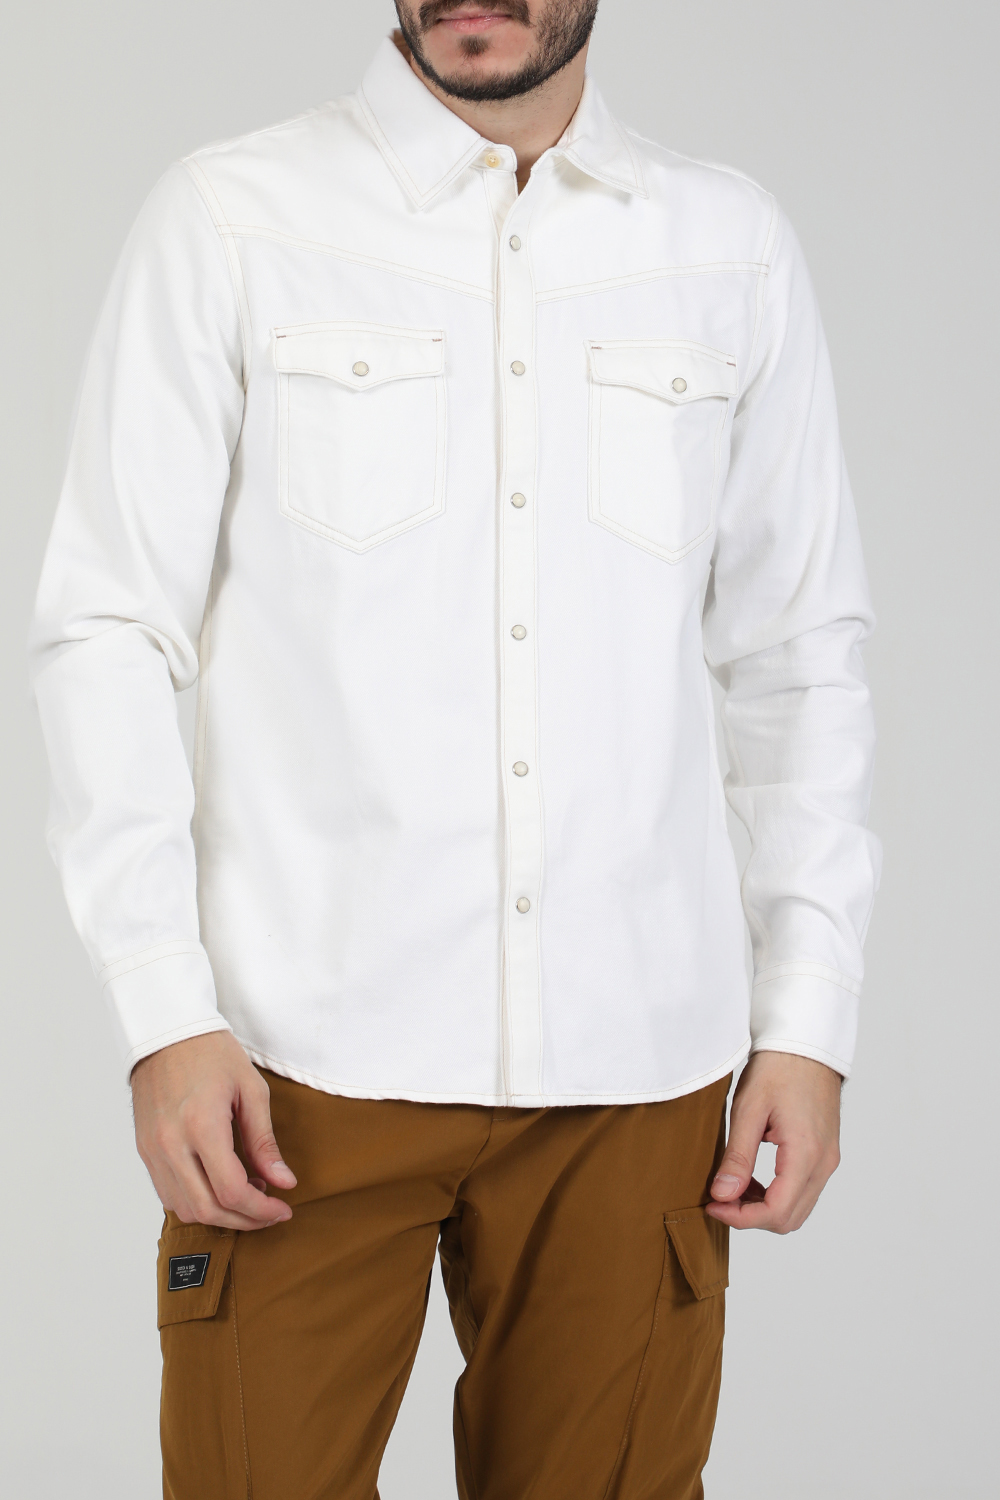 Ανδρικά/Ρούχα/Πουκάμισα/Μακρυμάνικα SCOTCH & SODA - Ανδρικό jean πουκάμισο SCOTCH & SODA REGULAR FIT - AMS denim western λευκό